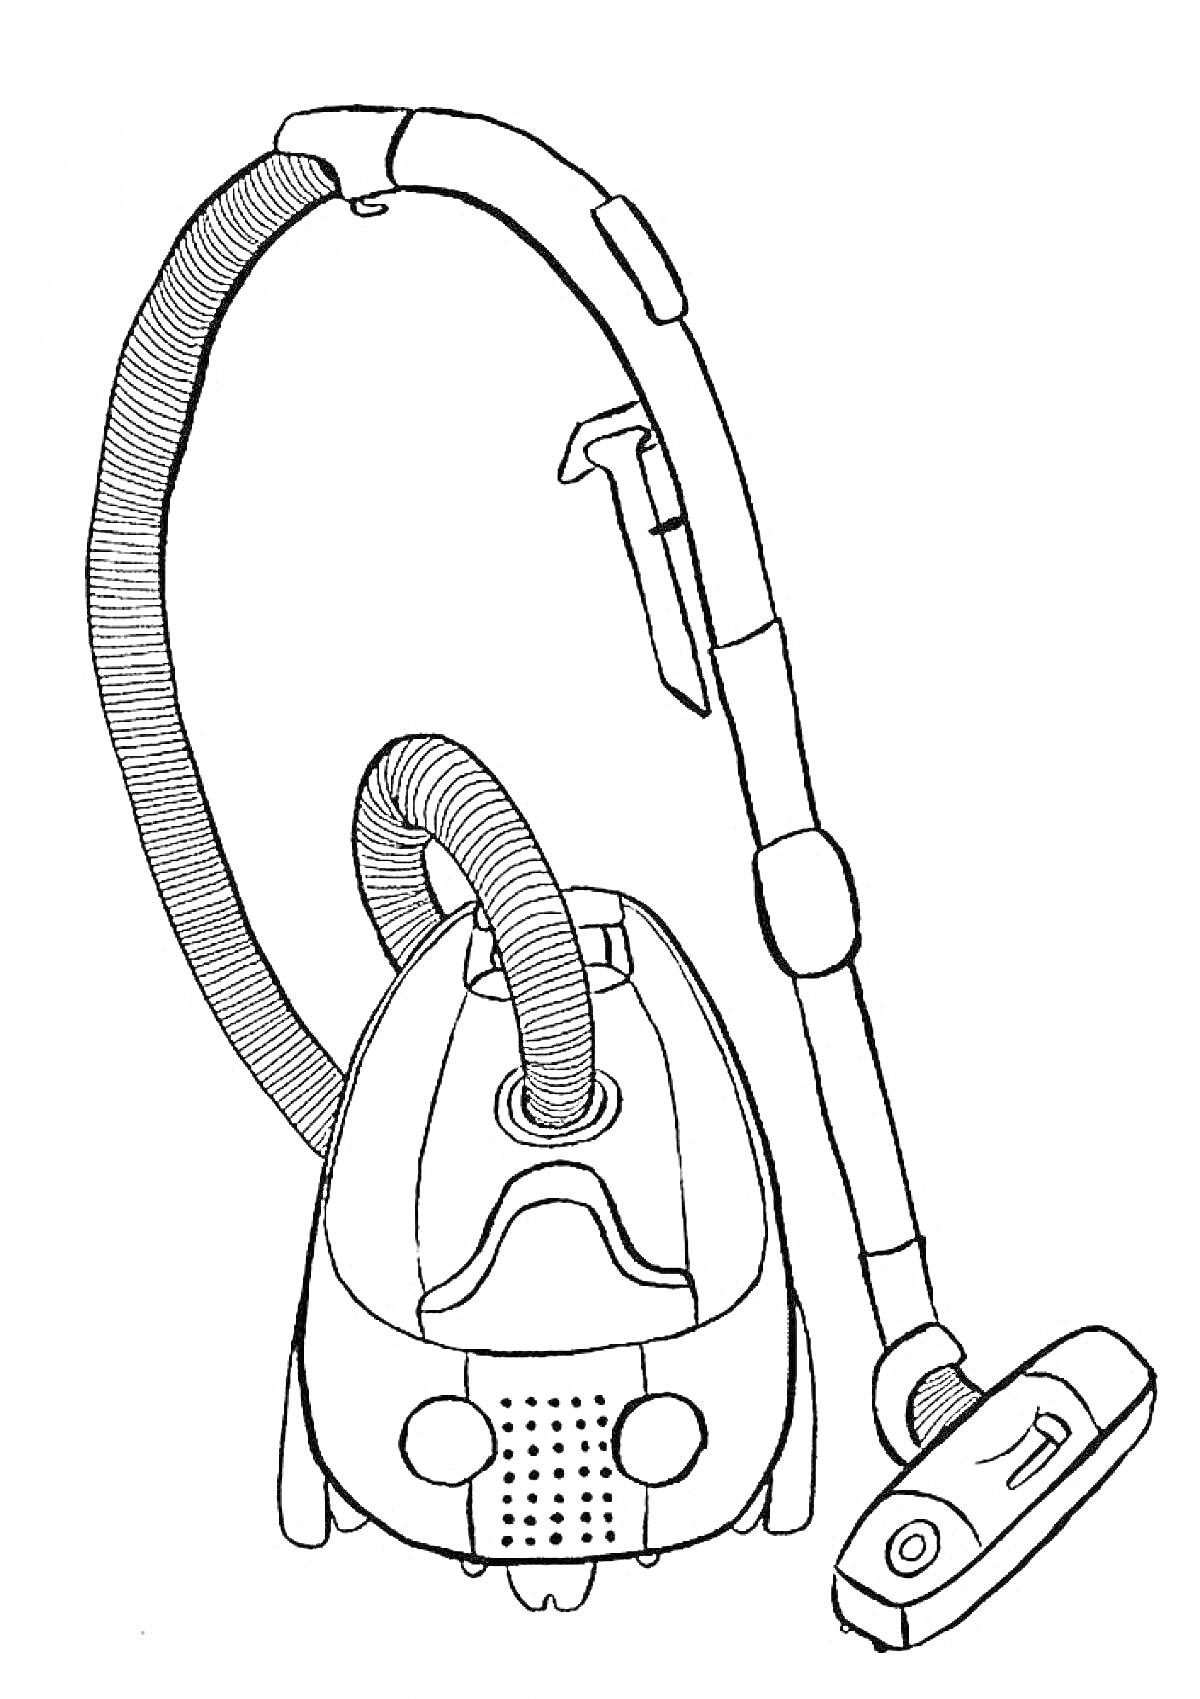 Раскраска Пылесос с гибким шлангом, телескопической трубкой и насадкой для уборки